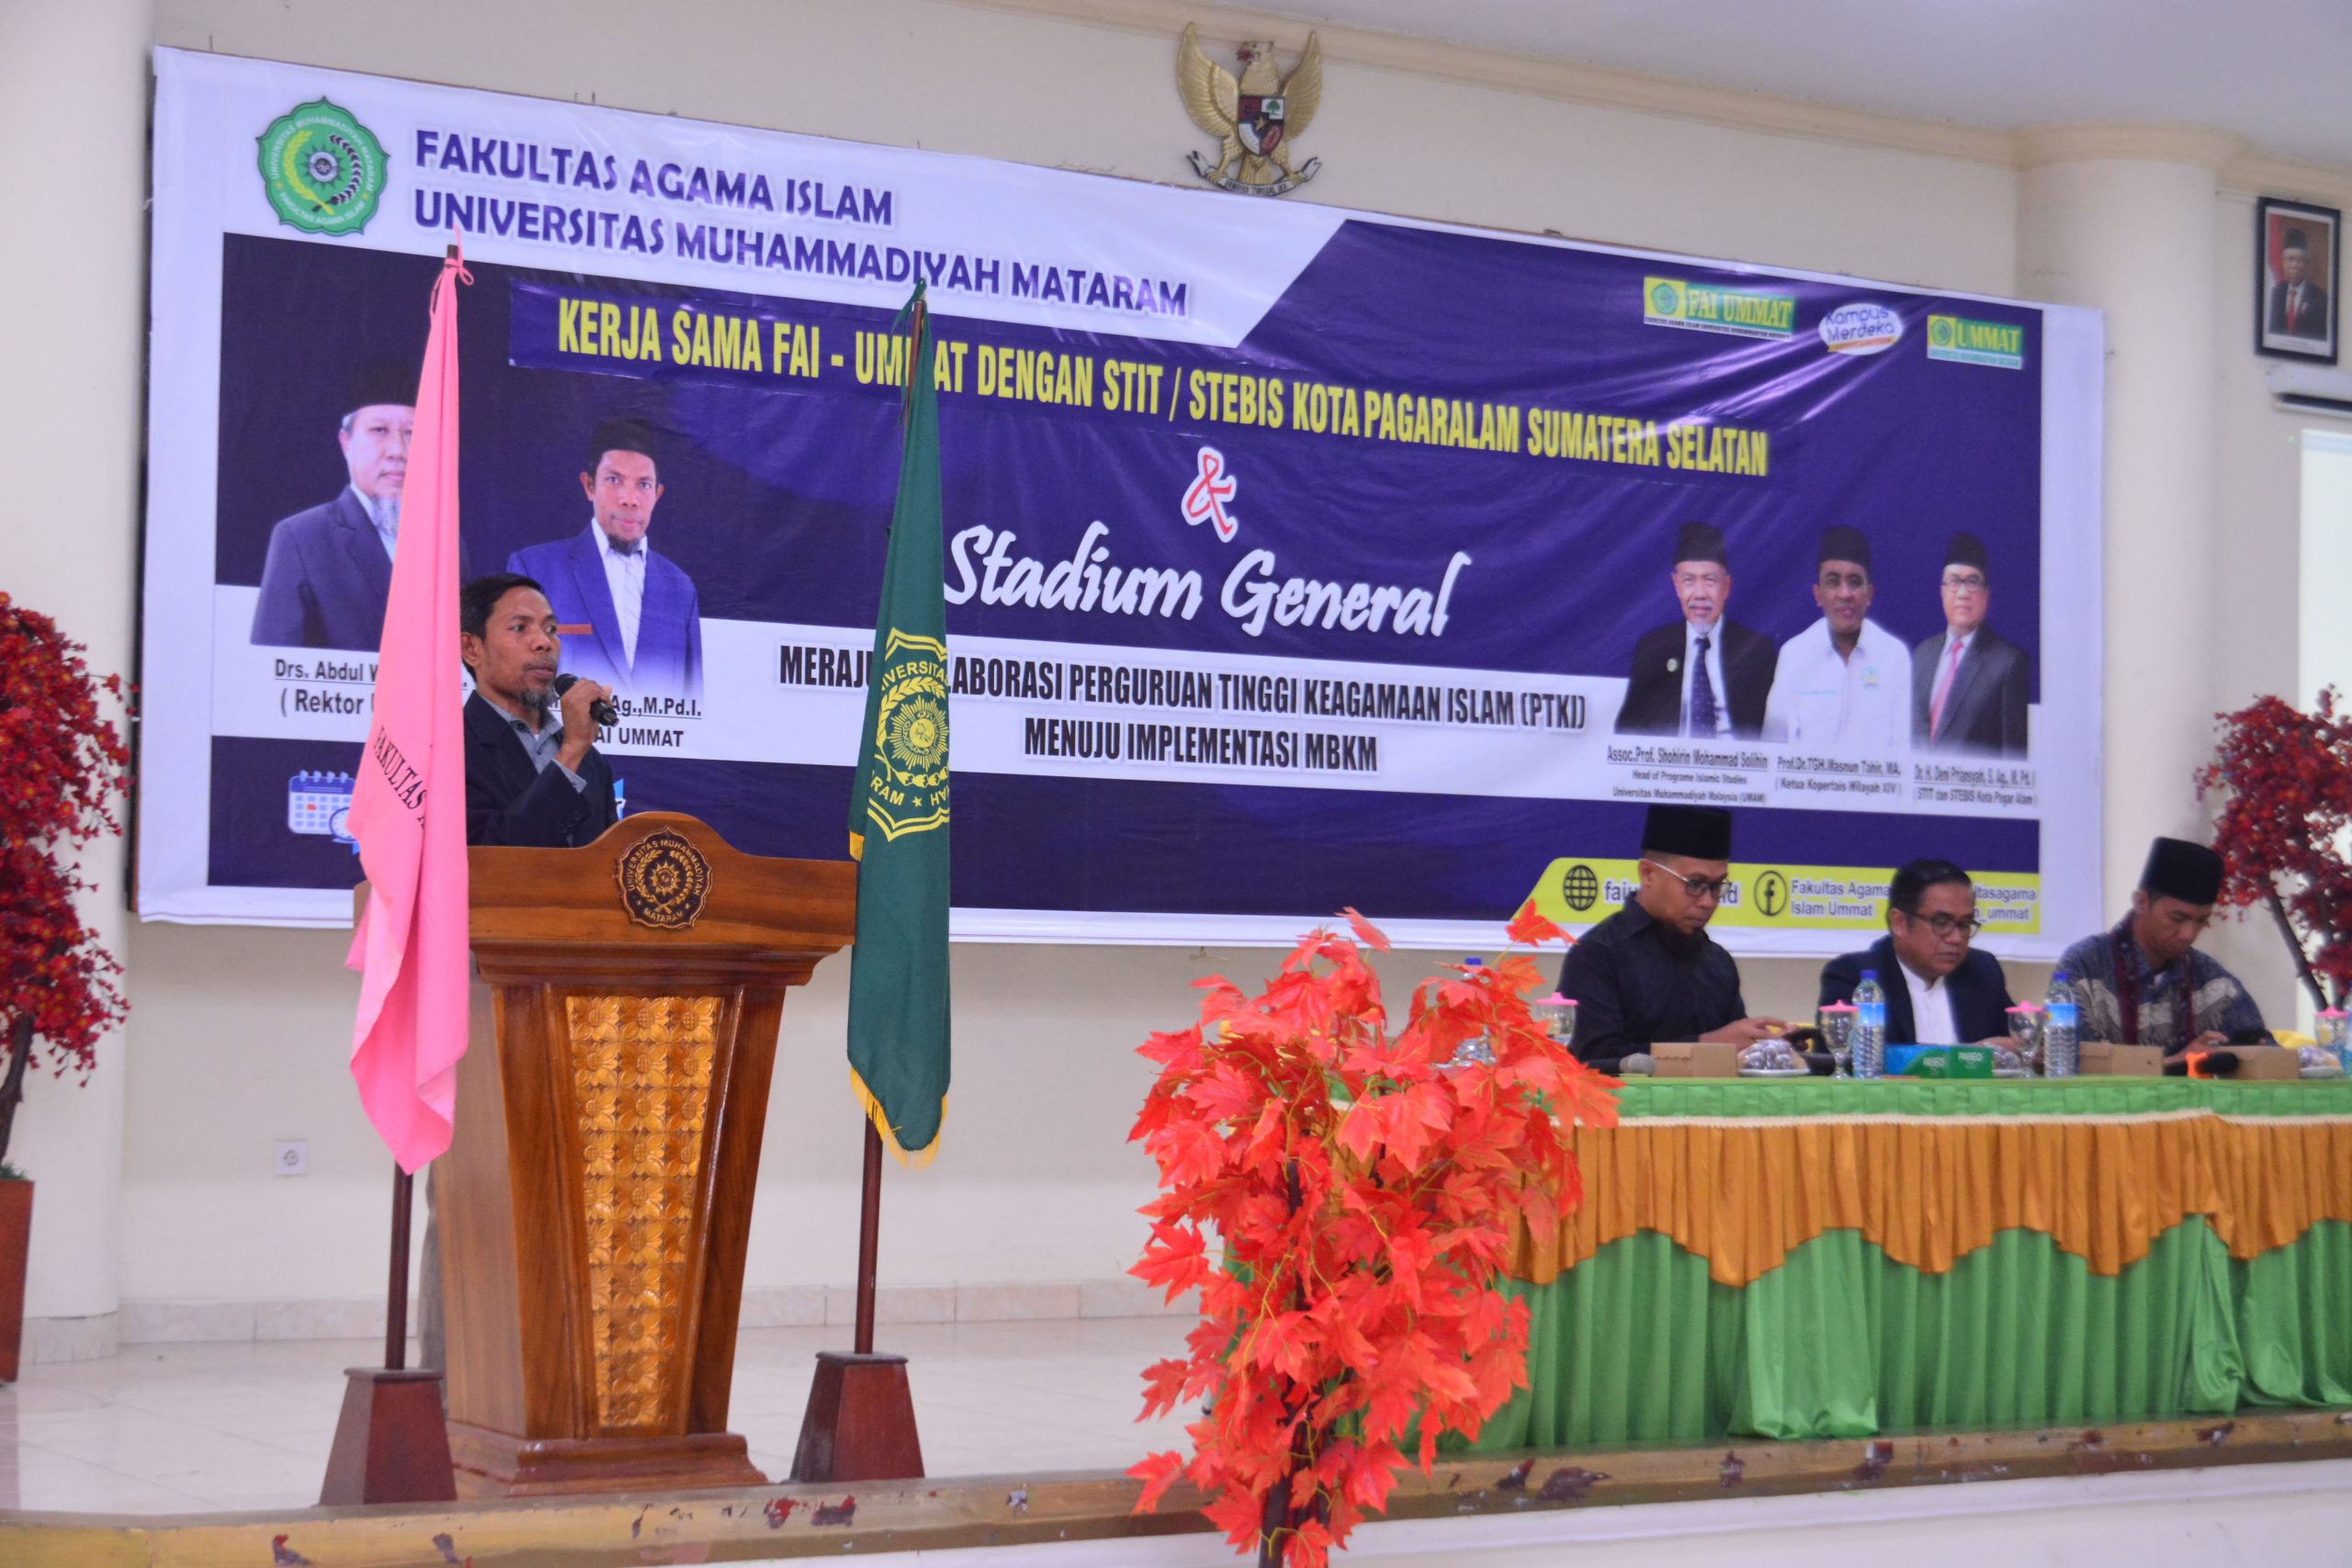 Studium General dan Kerjasama FAI UMMAT dengan STIT/STEBIS Kota Pagaralam Sumatera Selatan